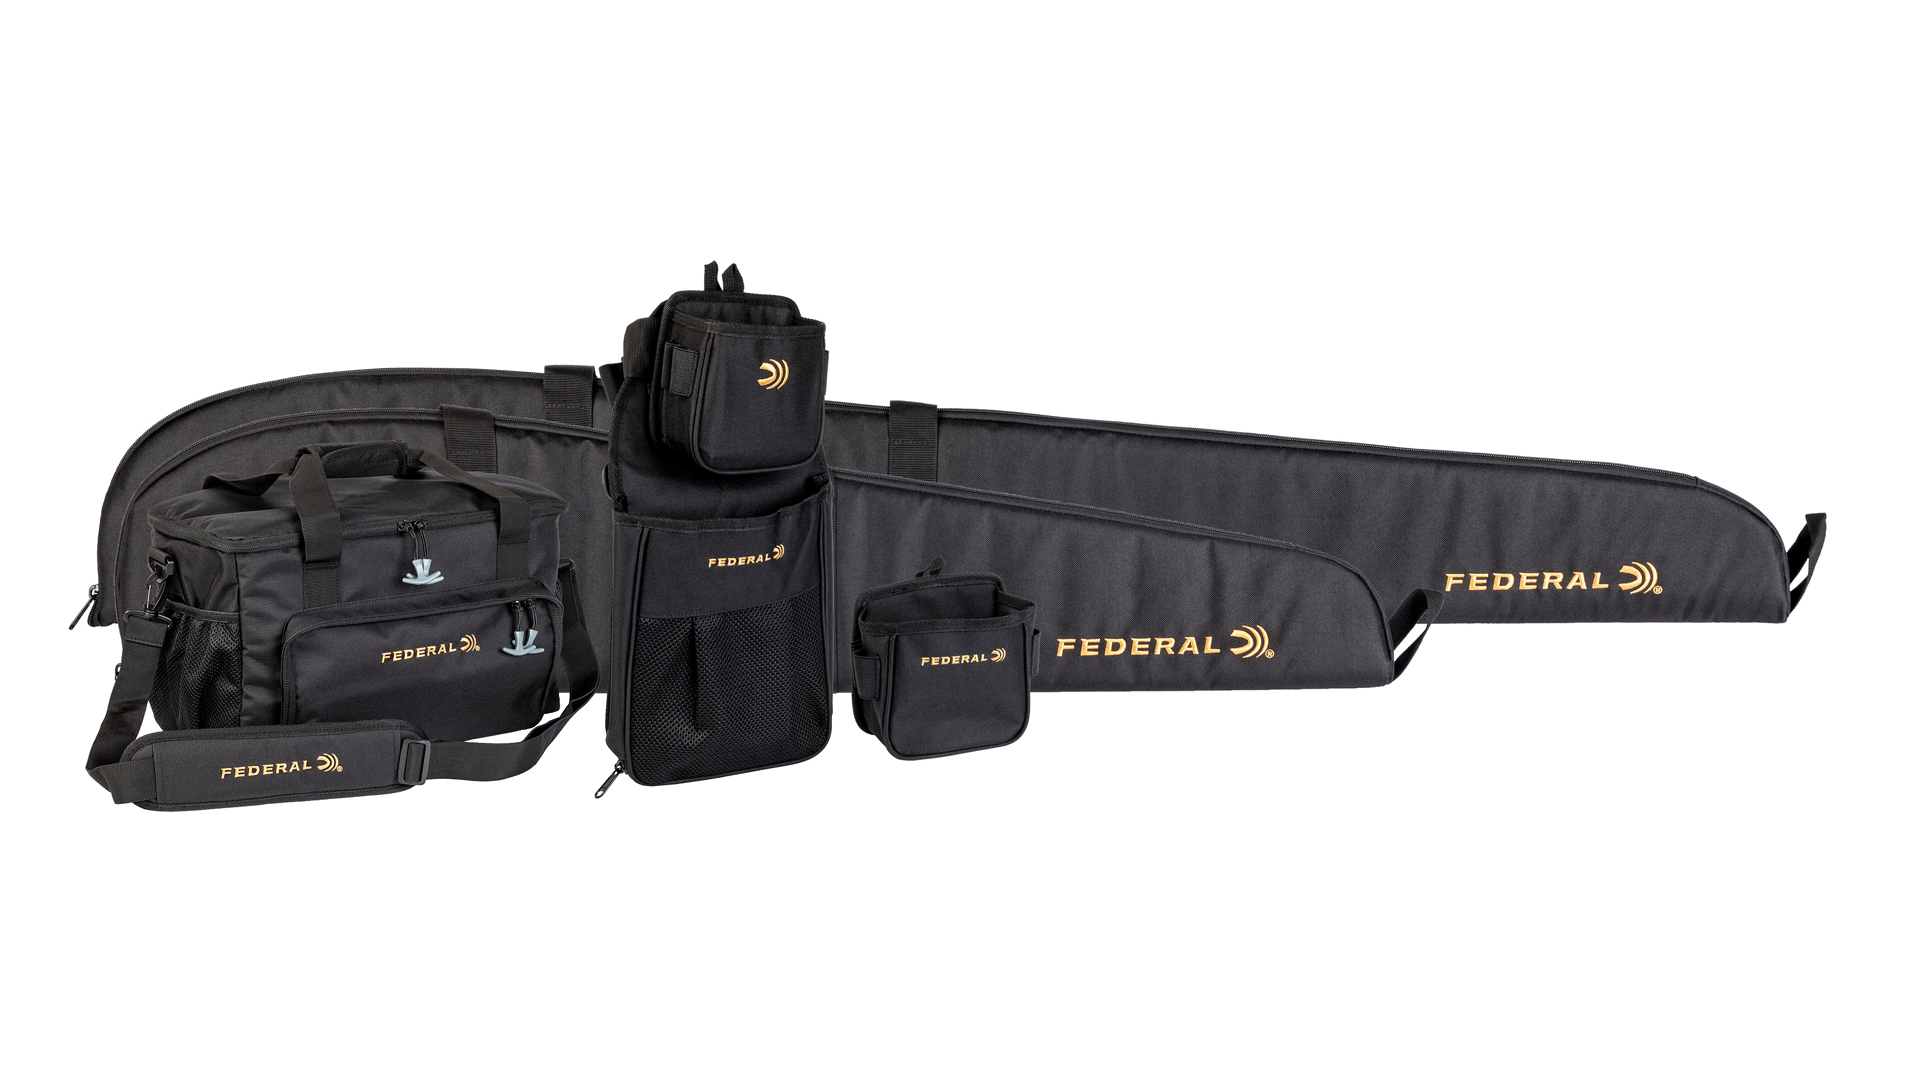 Federal Top Gun bags